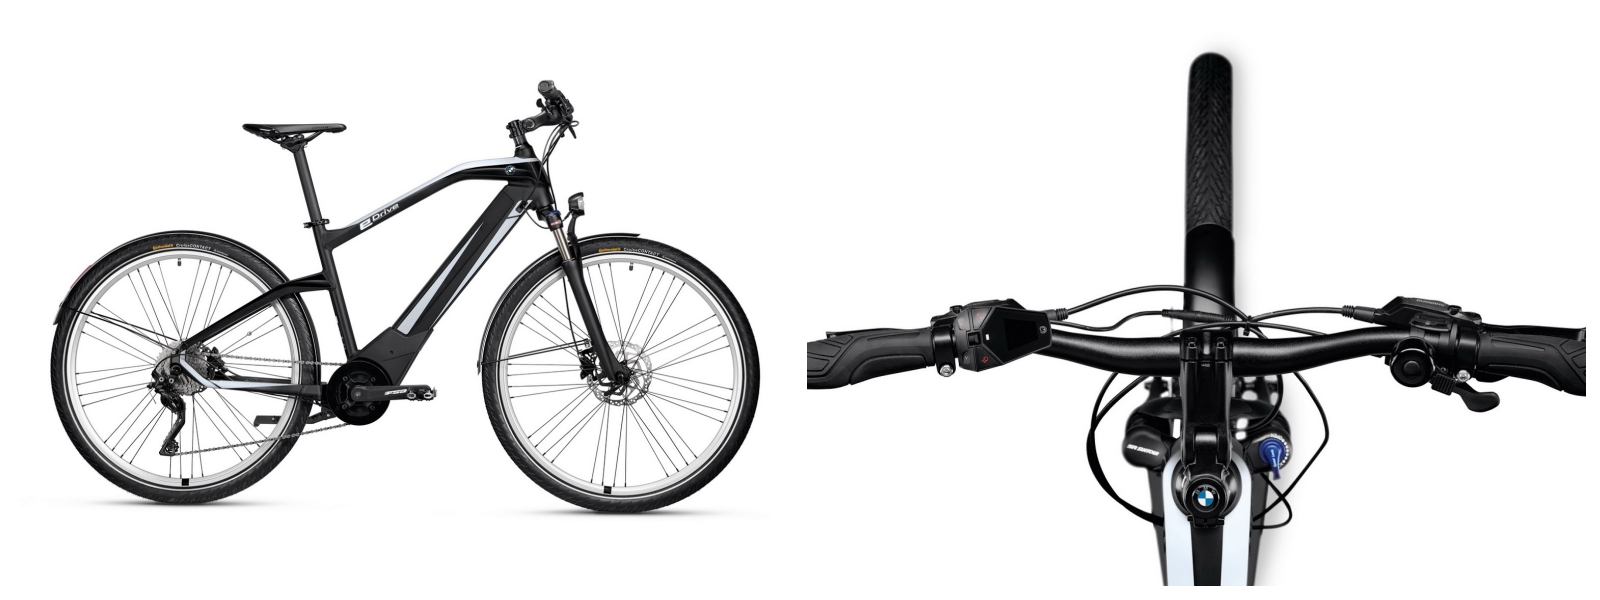 BMW giới thiệu xe đạp lai điện Active Hybrid e-bike, 100 km/một lần sạc, giá 4.000 USD